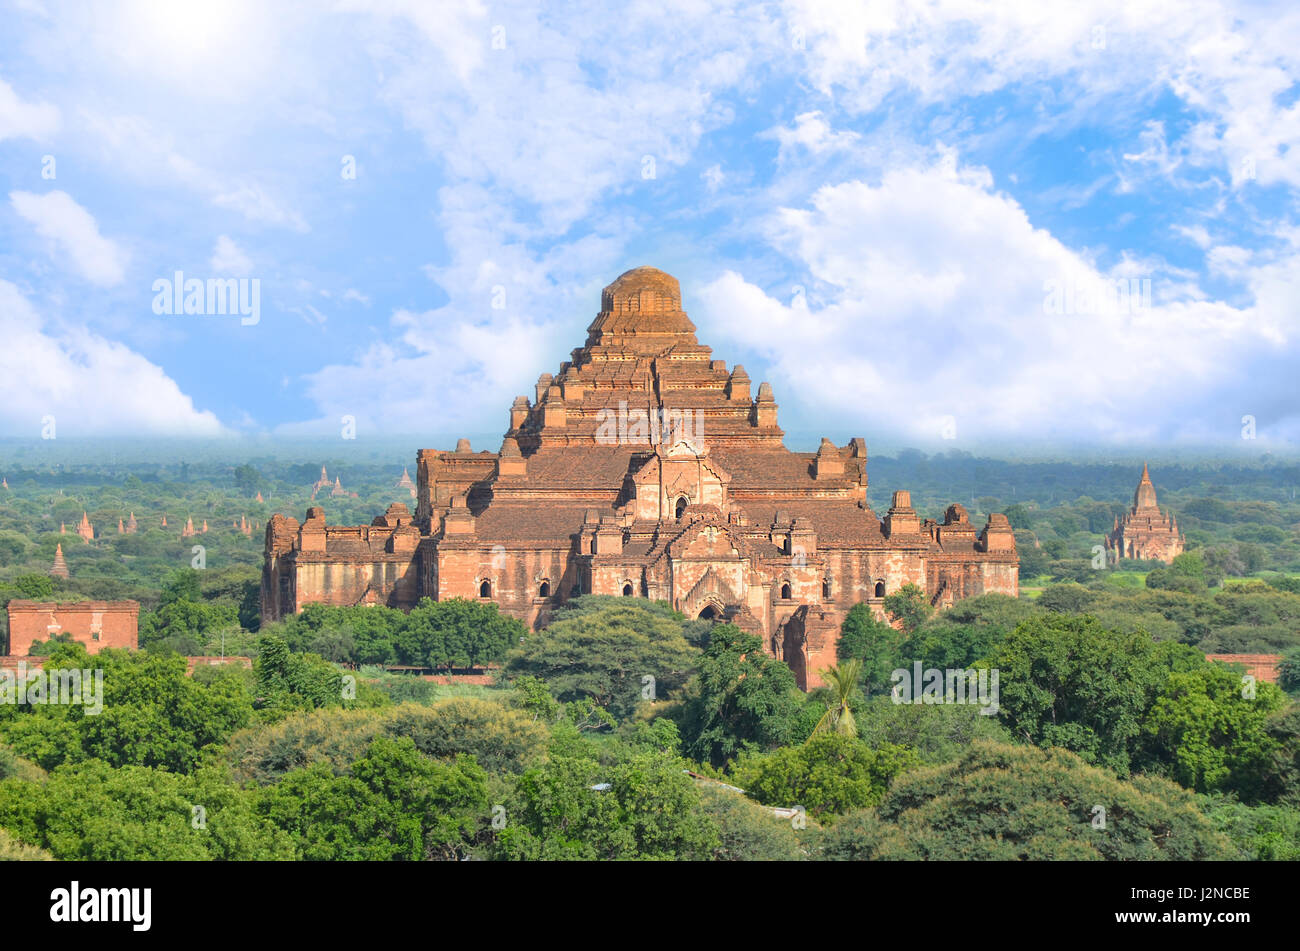 Temple Dhammayangyi est un plus grand temple bouddhiste situé dans la région de Bagan, Myanmar. Banque D'Images